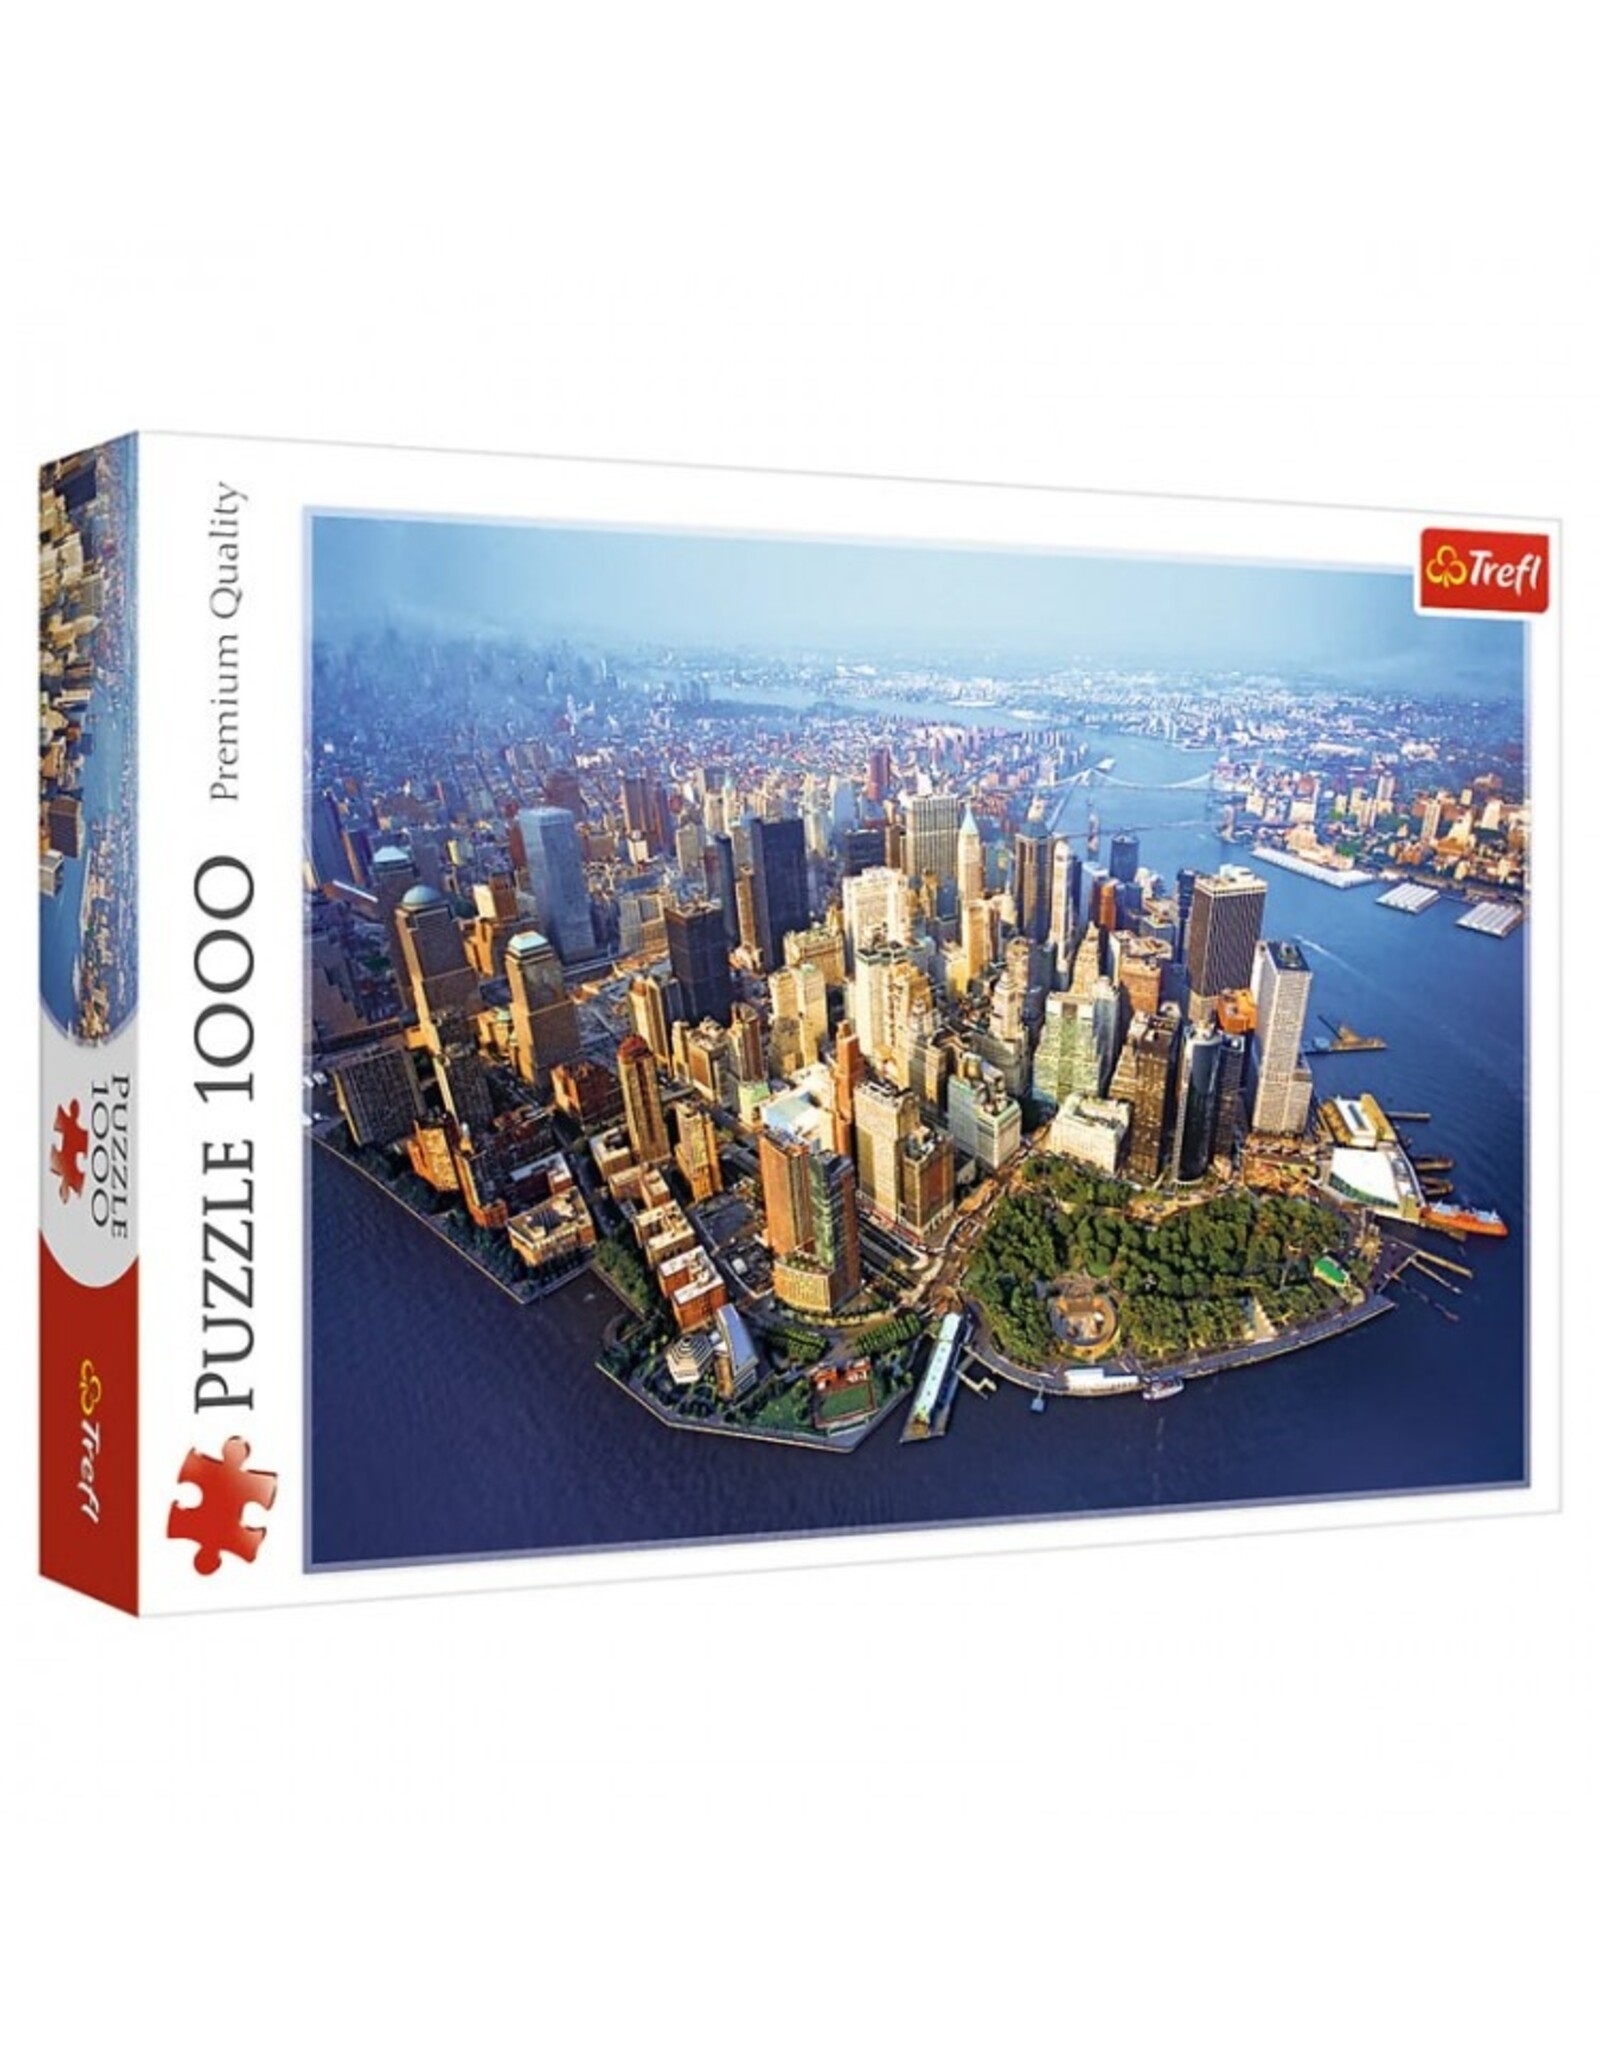 Trefl Puzzle: New York 1000pc